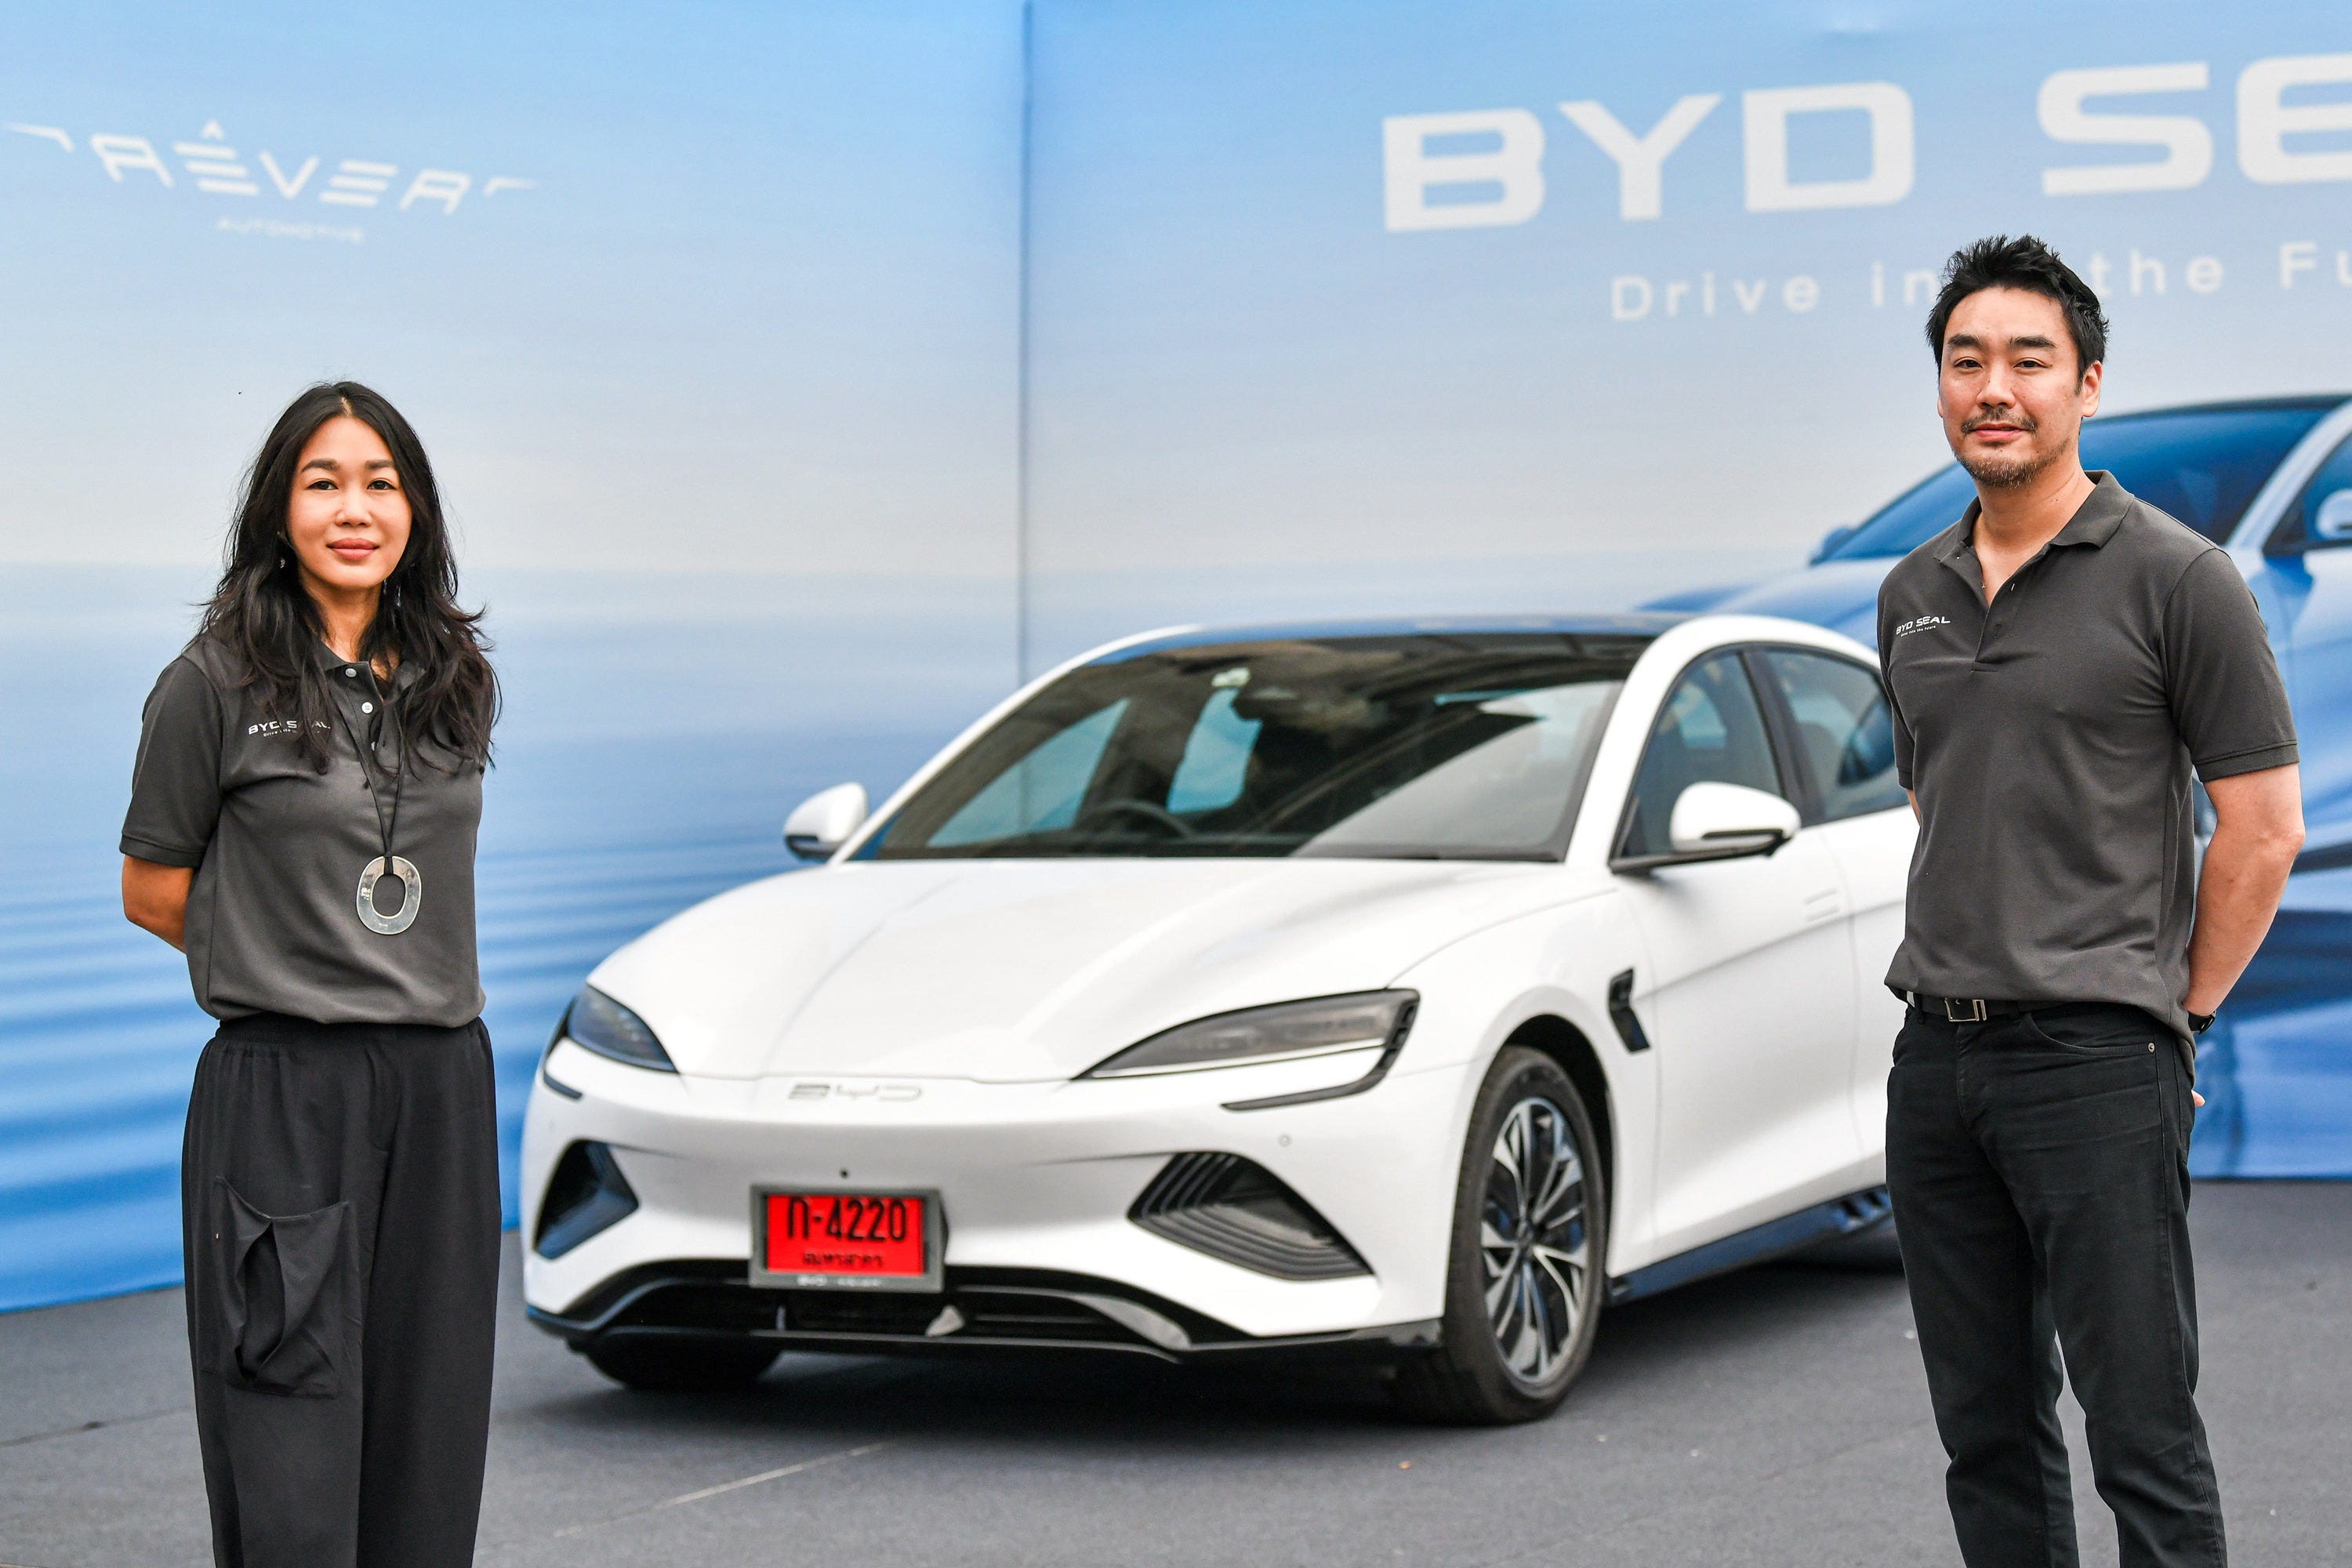 เรเว่ เข้าร่วมนโยบาย EV 3.5 พร้อมคงราคารถยนต์ BYD ทุกรุ่น ขับเคลื่อนประเทศไทยสู่สังคมยานยนต์ไฟฟ้าอย่างแข็งแกร่ง